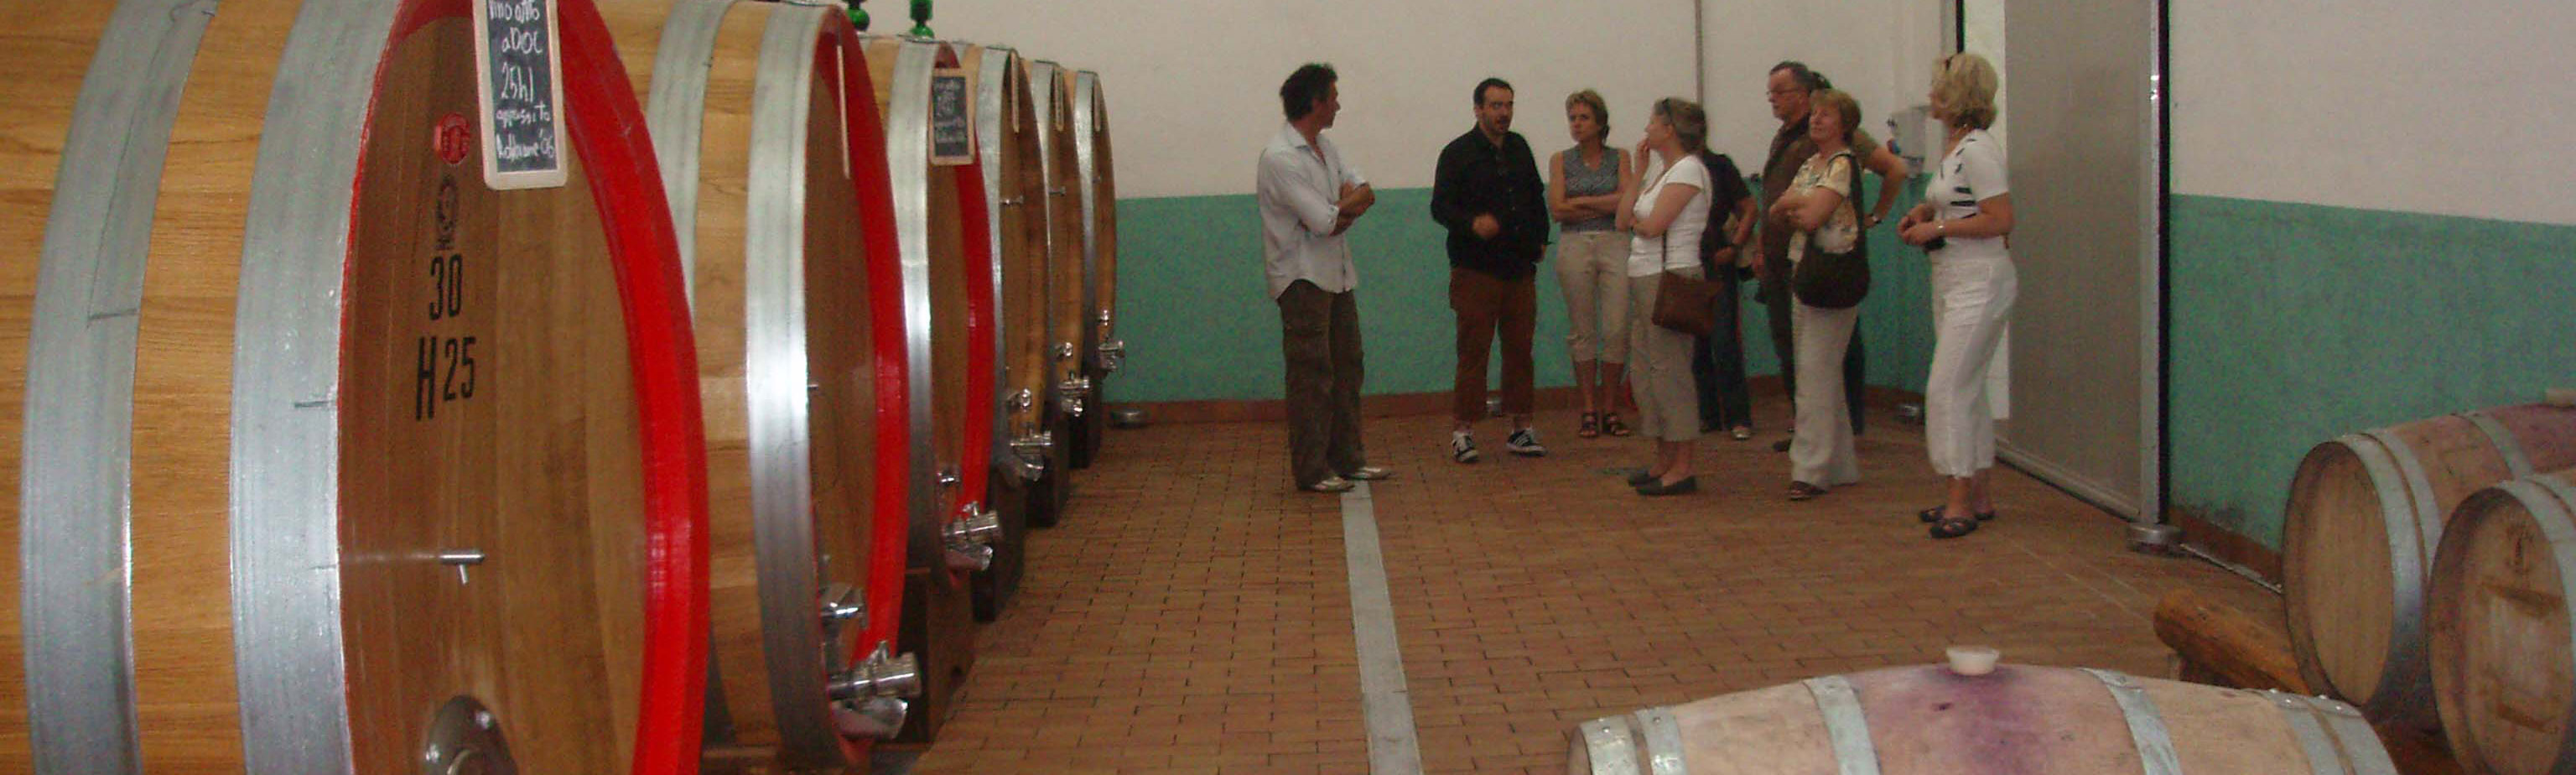 Kookcursus op maat met wijnproeverijen en bezoek aan lokale wijnkelders 
      en kaasmakers.